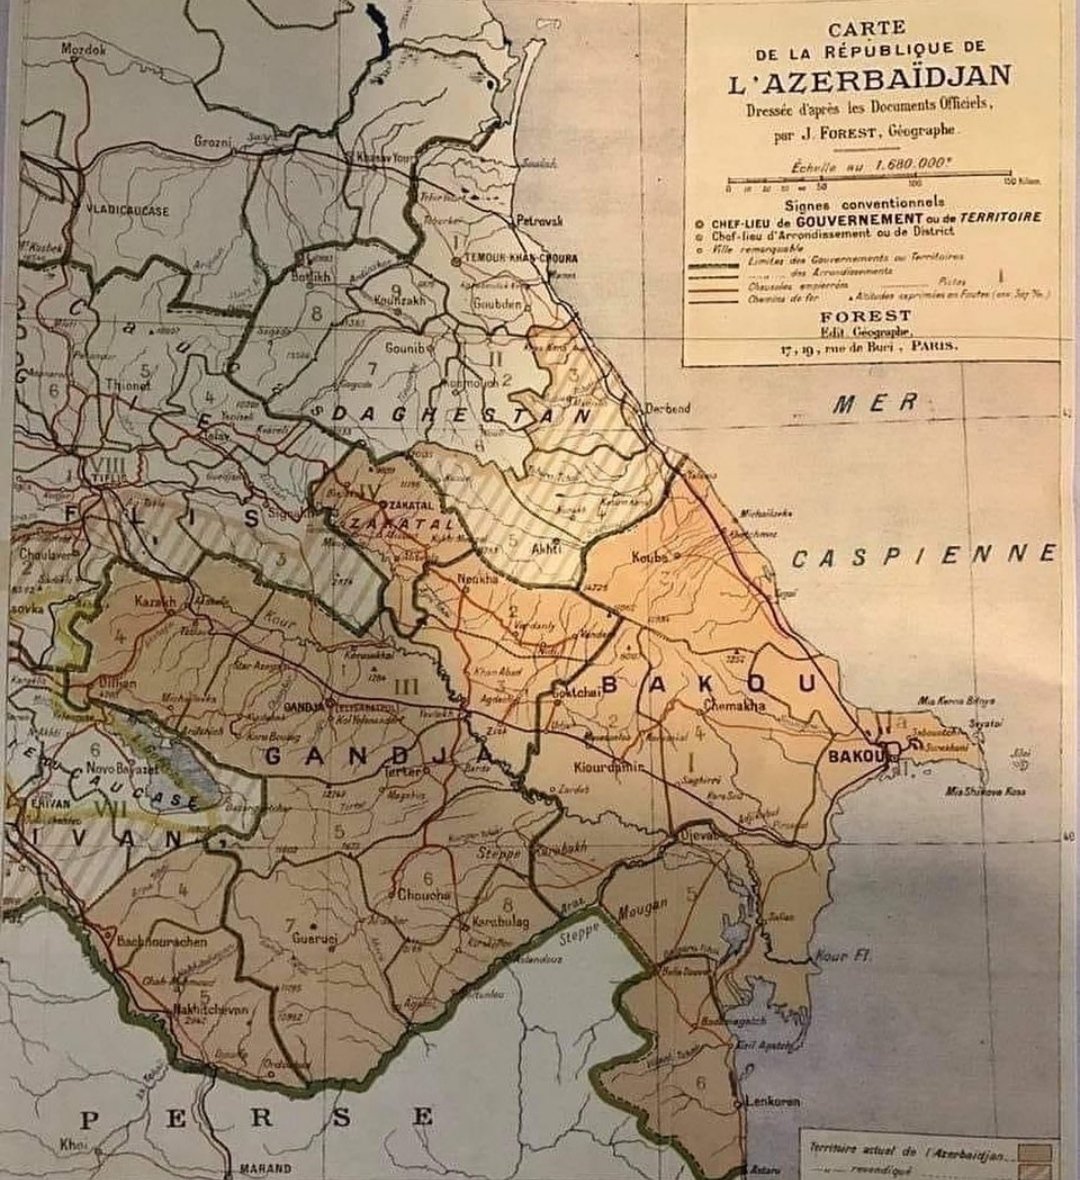 1918-ci ildə Fransa tərəfindən təsdiq və çap edilmiş Azərbaycan xəritəsi
Paylaşın
#StopArmenianAggression 
#stoparmenianterrorism #stopArmenia #StrongAze #KarabakhisAzerbaijan #QarabağAzərbaycandır